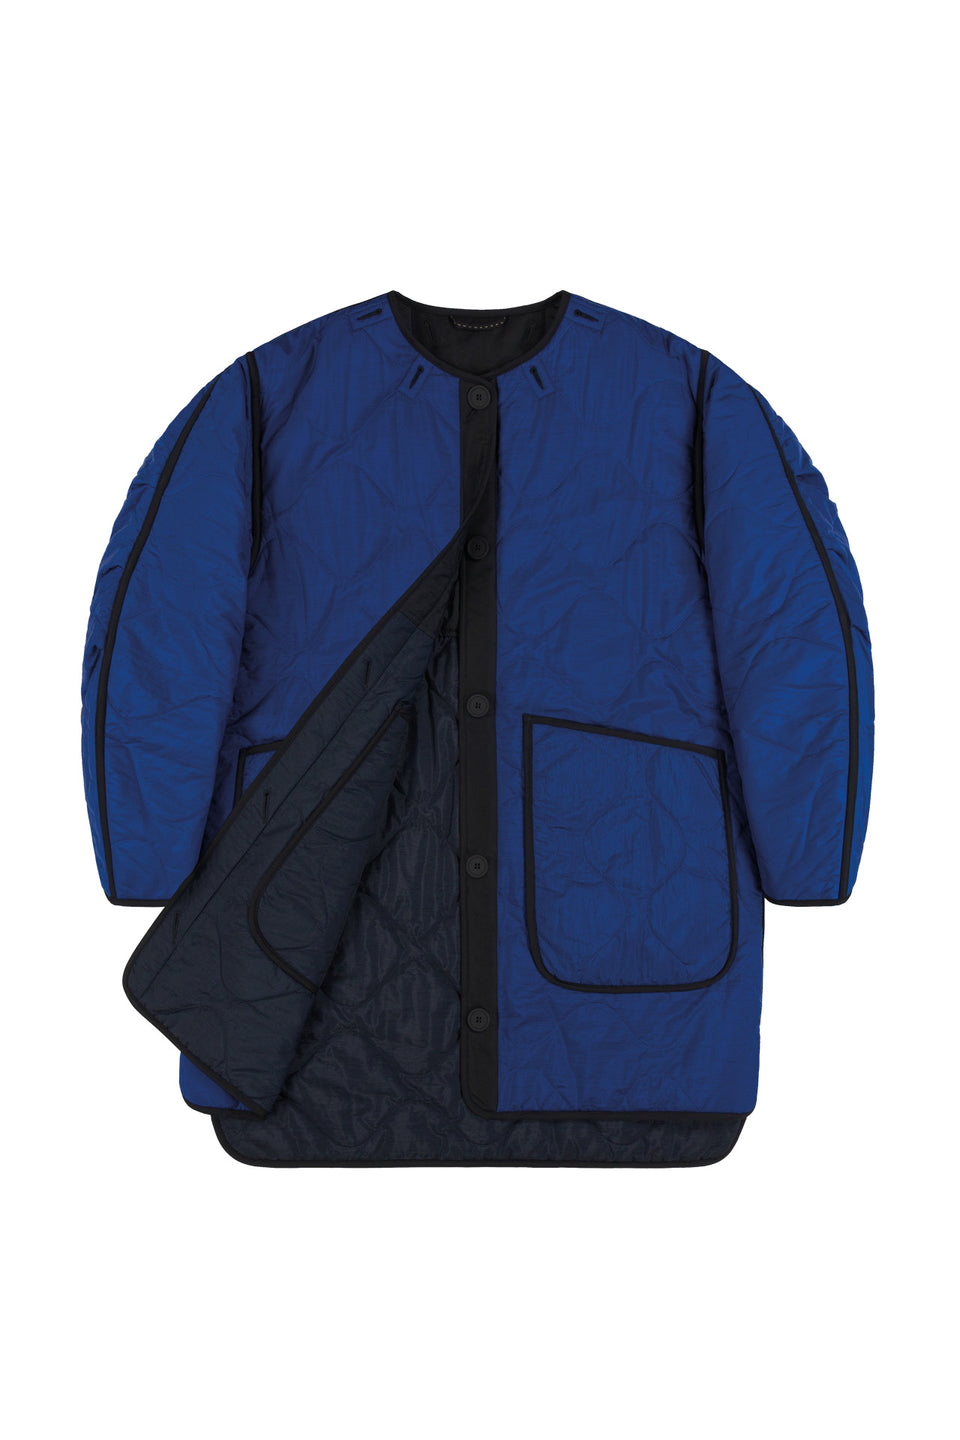 Colourblock Quilt Jacket - Black / Cobalt (listing page thumbnail)